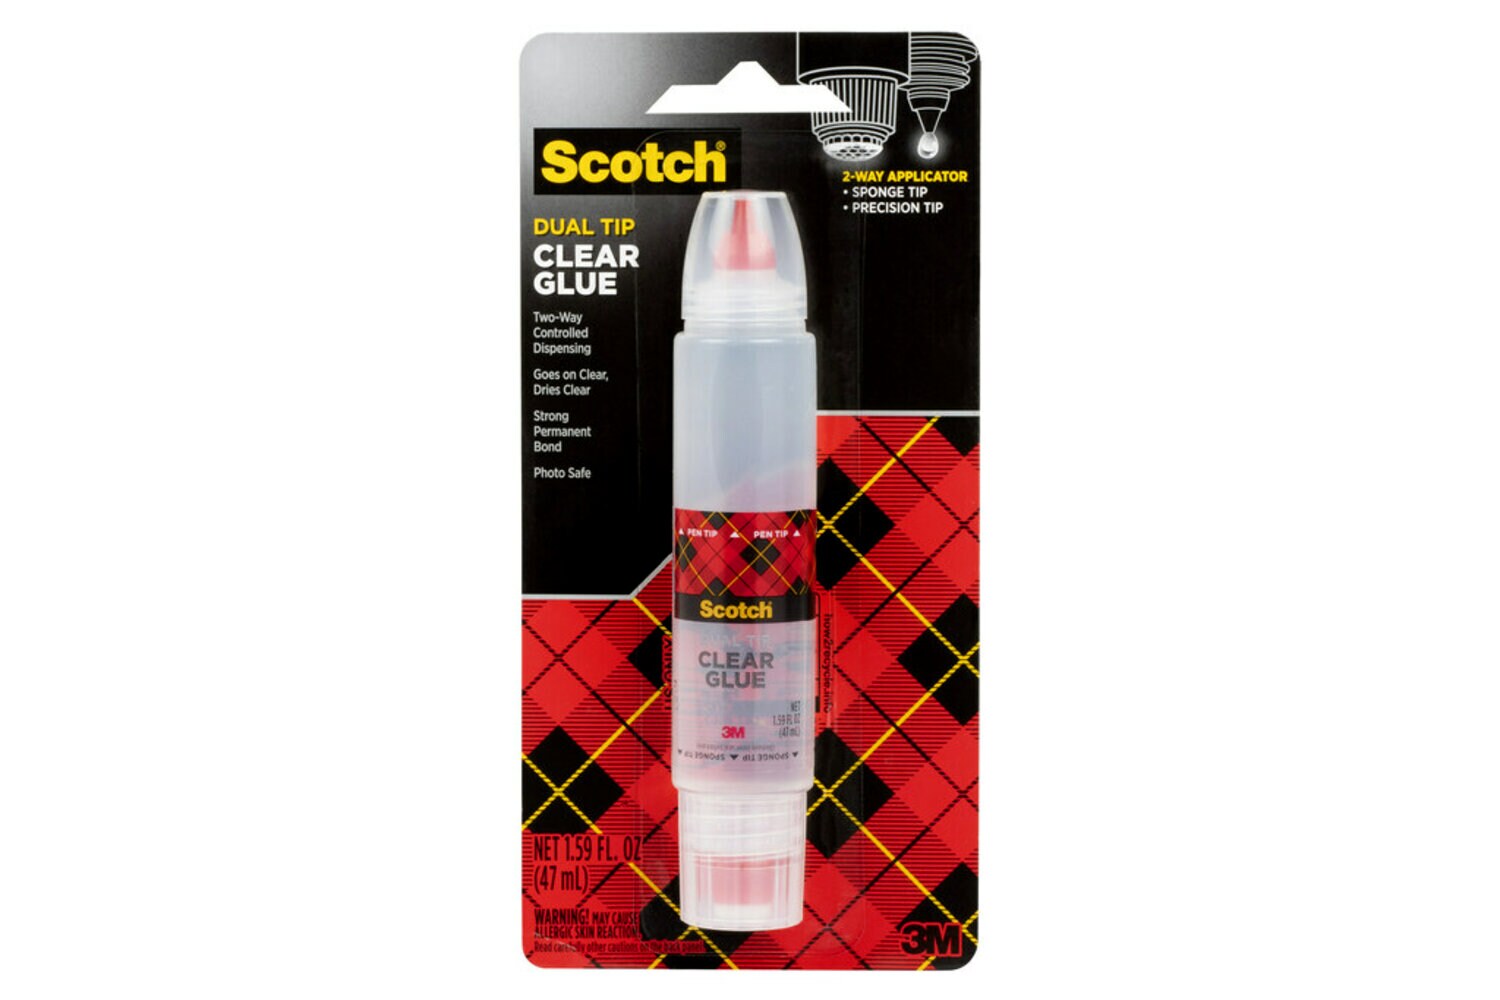 7000052506 - Scotch Clear Glue in 2-way Applicator, 6050, 1.6 oz